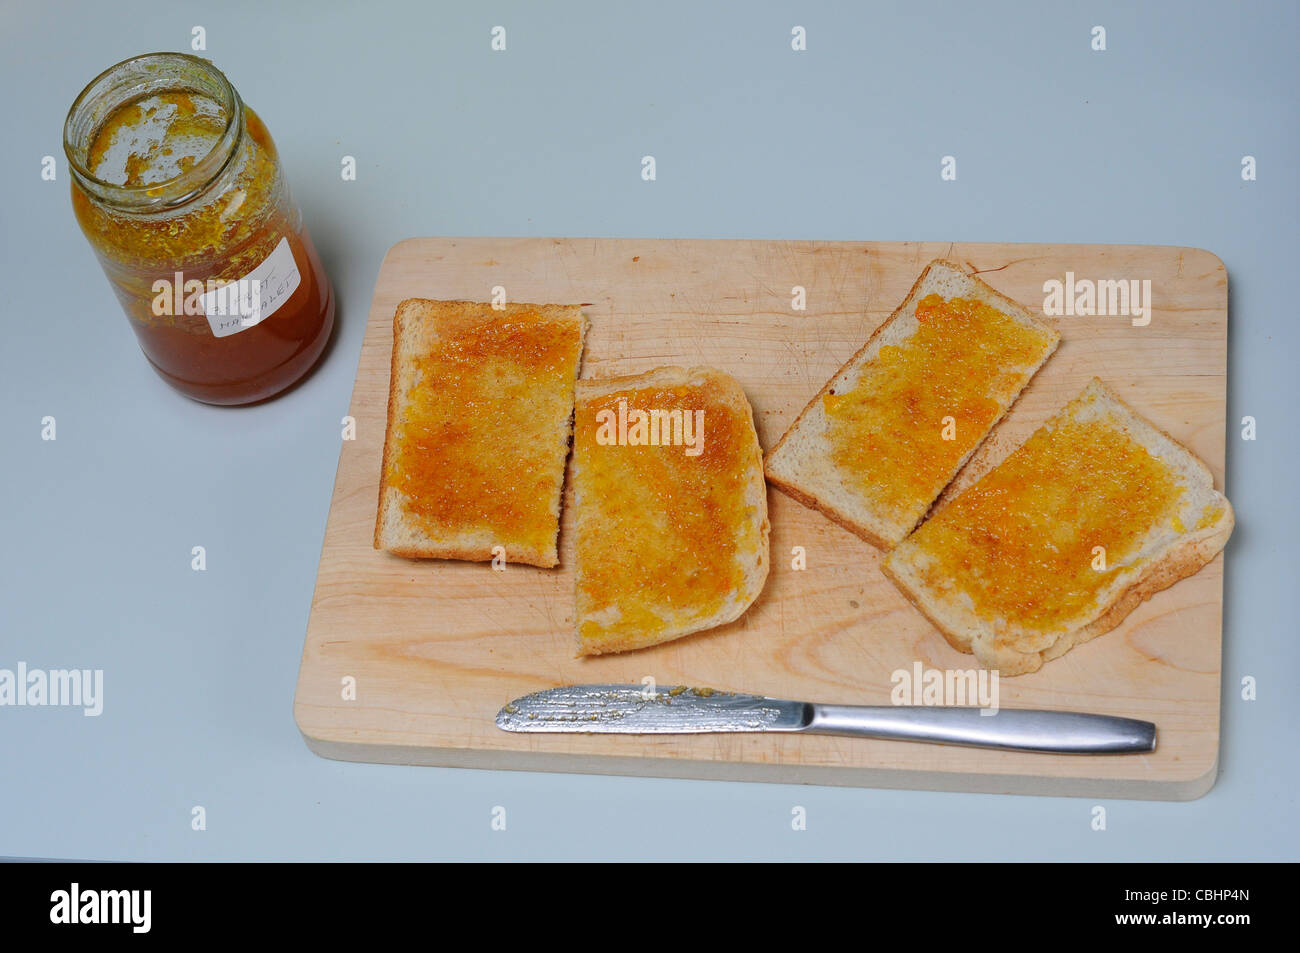 Facendo colazione a base di pane tostato con marmellata di arance Foto Stock